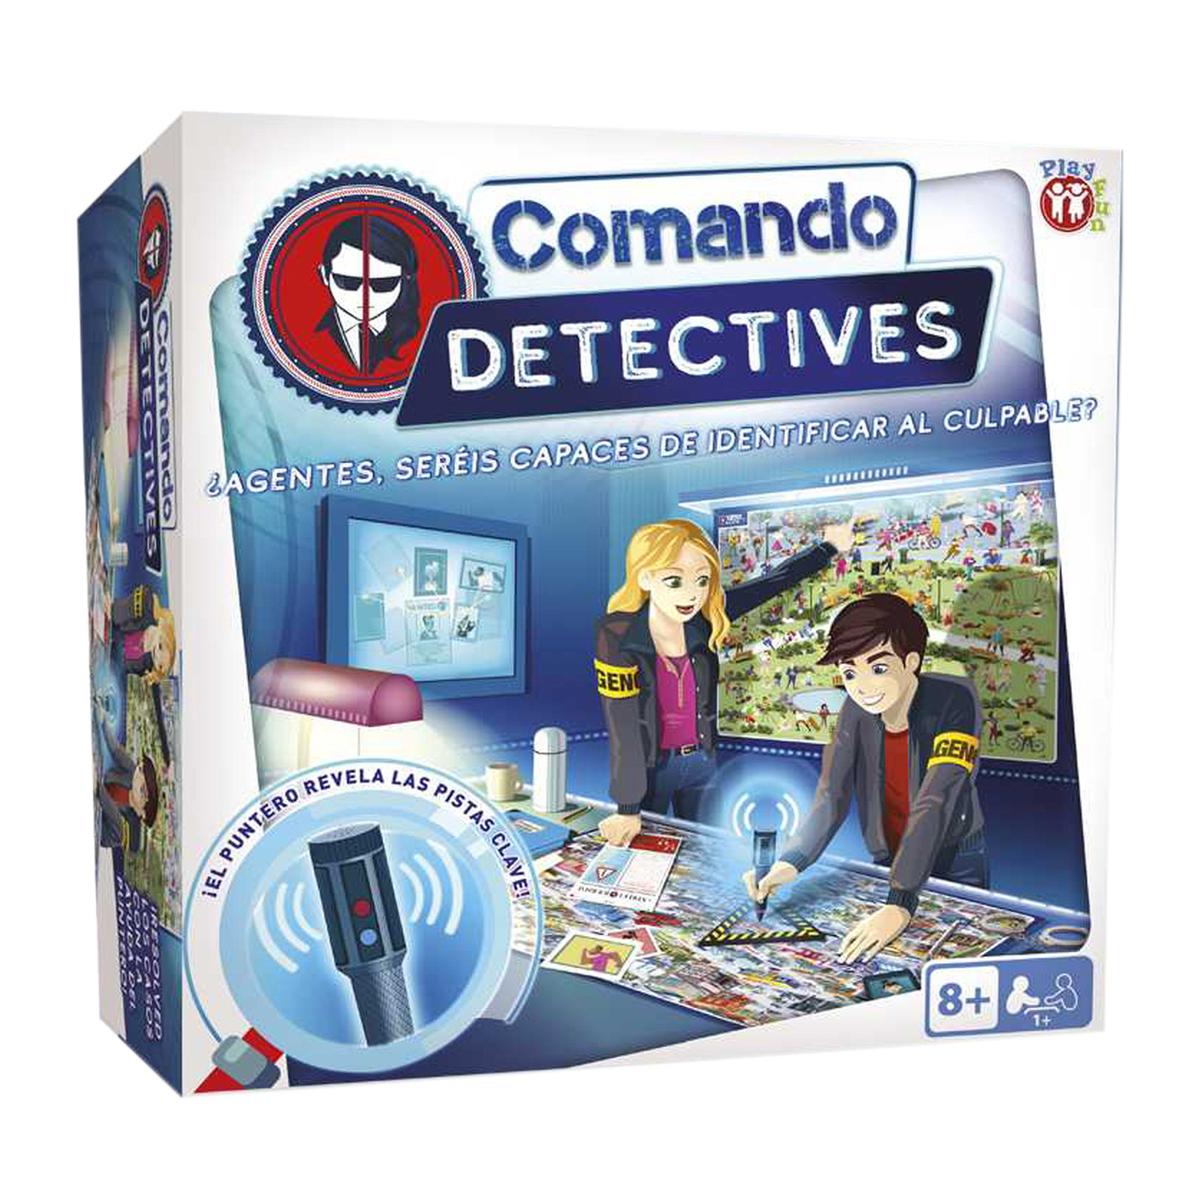 Comando Detectives | IMC Toys | Toys